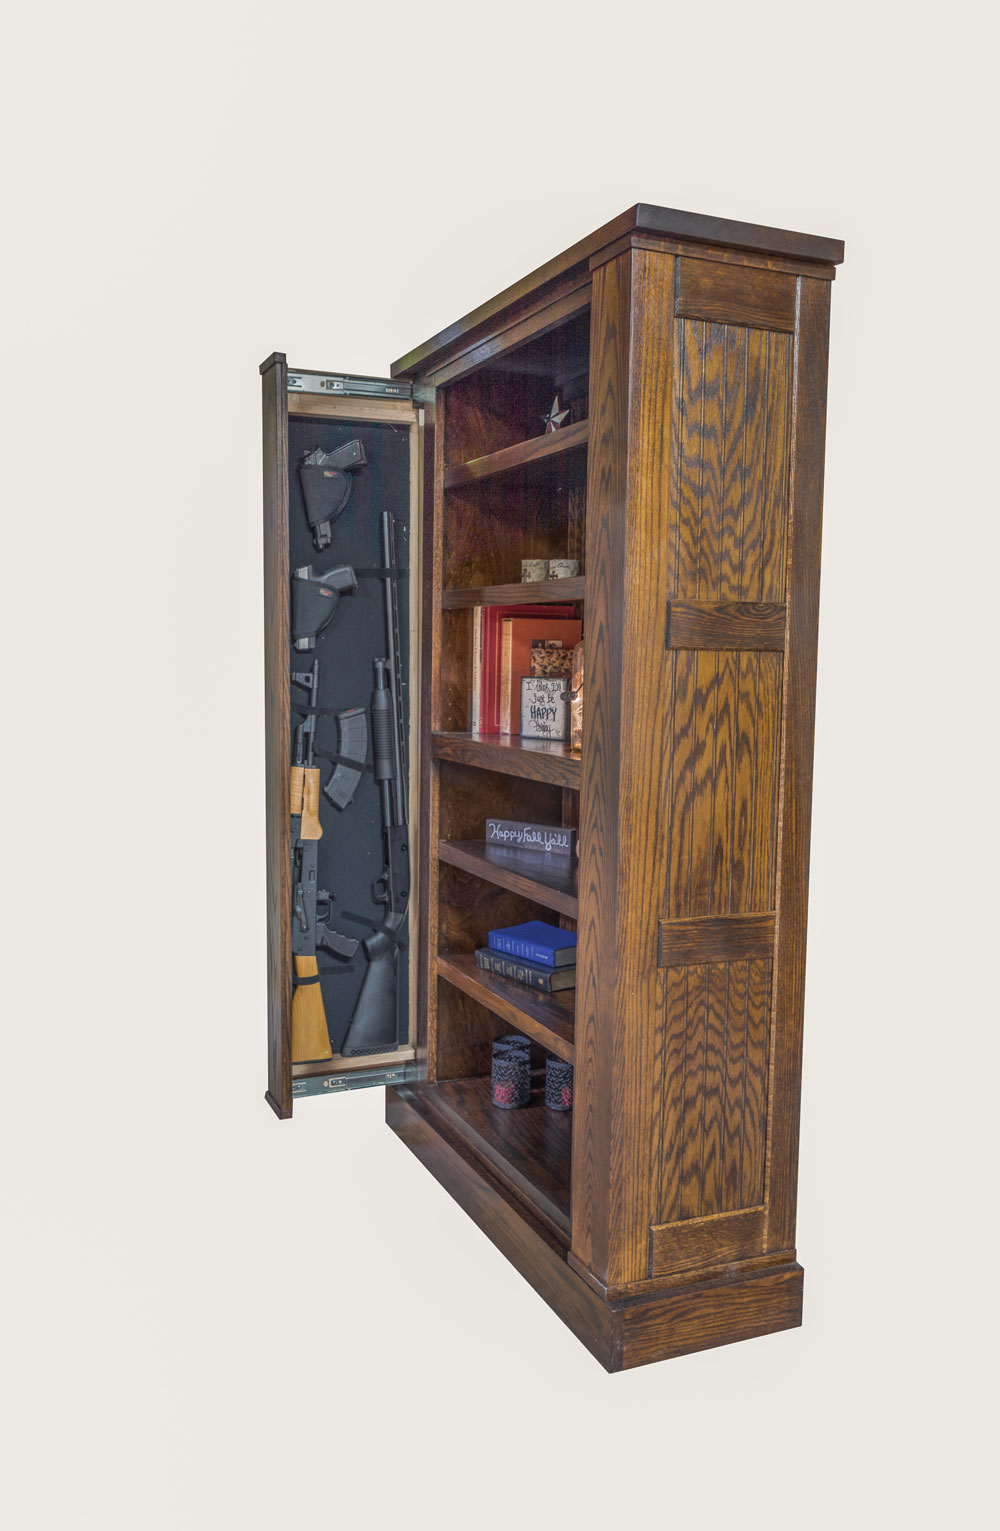 Book Shelf Gun Storage by Willa-Hide nominated for 2016-17 ADEX Awards.